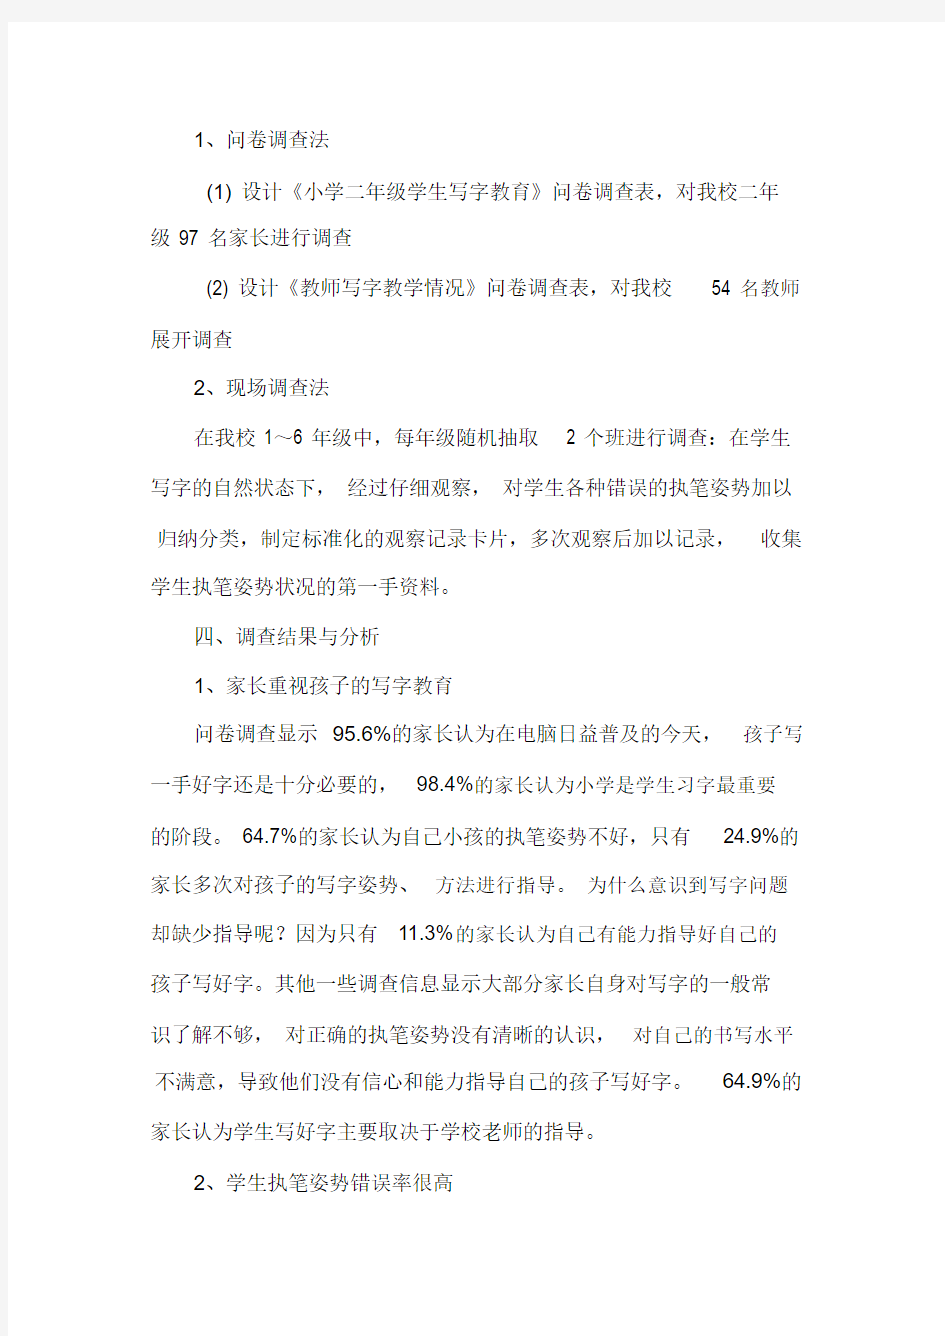 小学生汉字书写情况的调查报告[1]